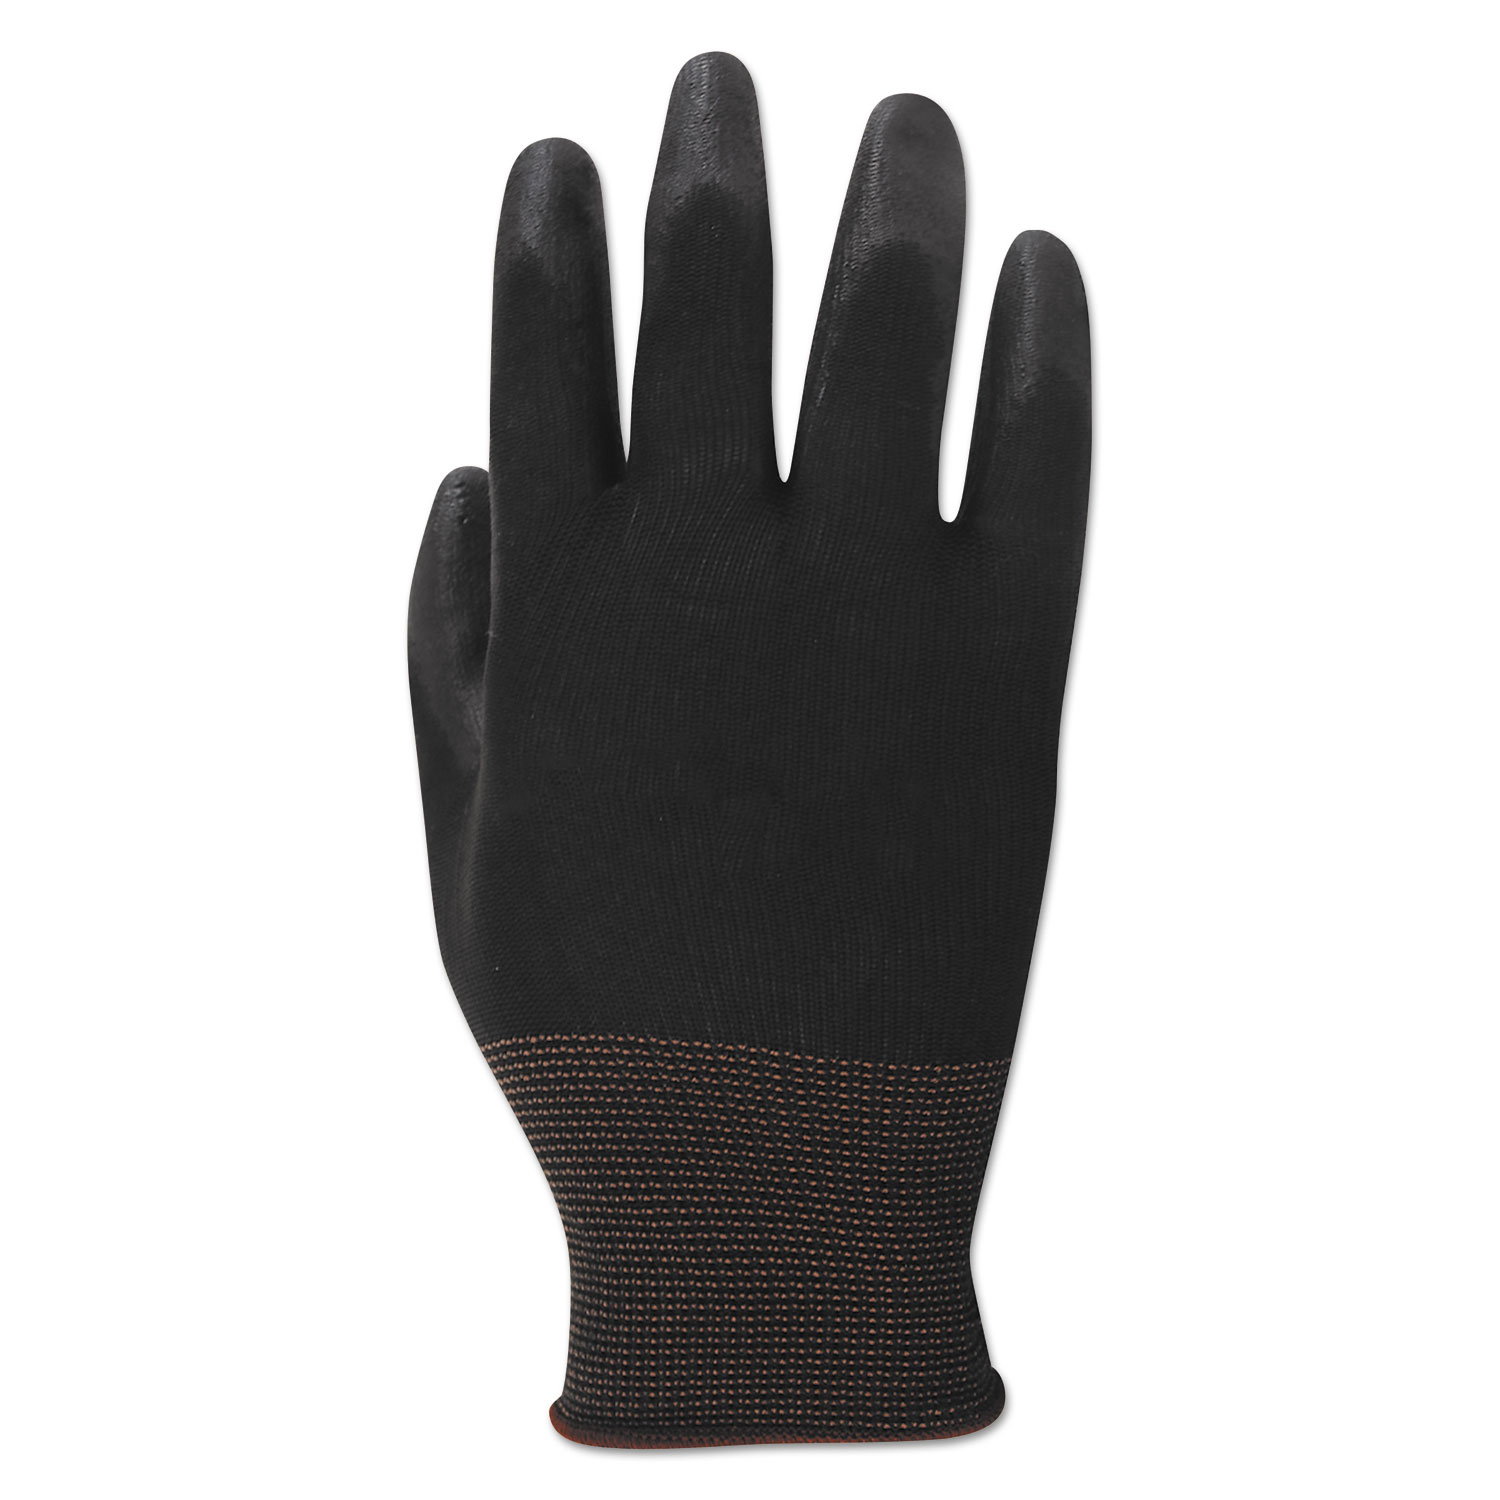 Palm Coated Cut-Resistant HPPE Glove, Salt & Pepper/Blk, Size 11(2-X-Large), DZ